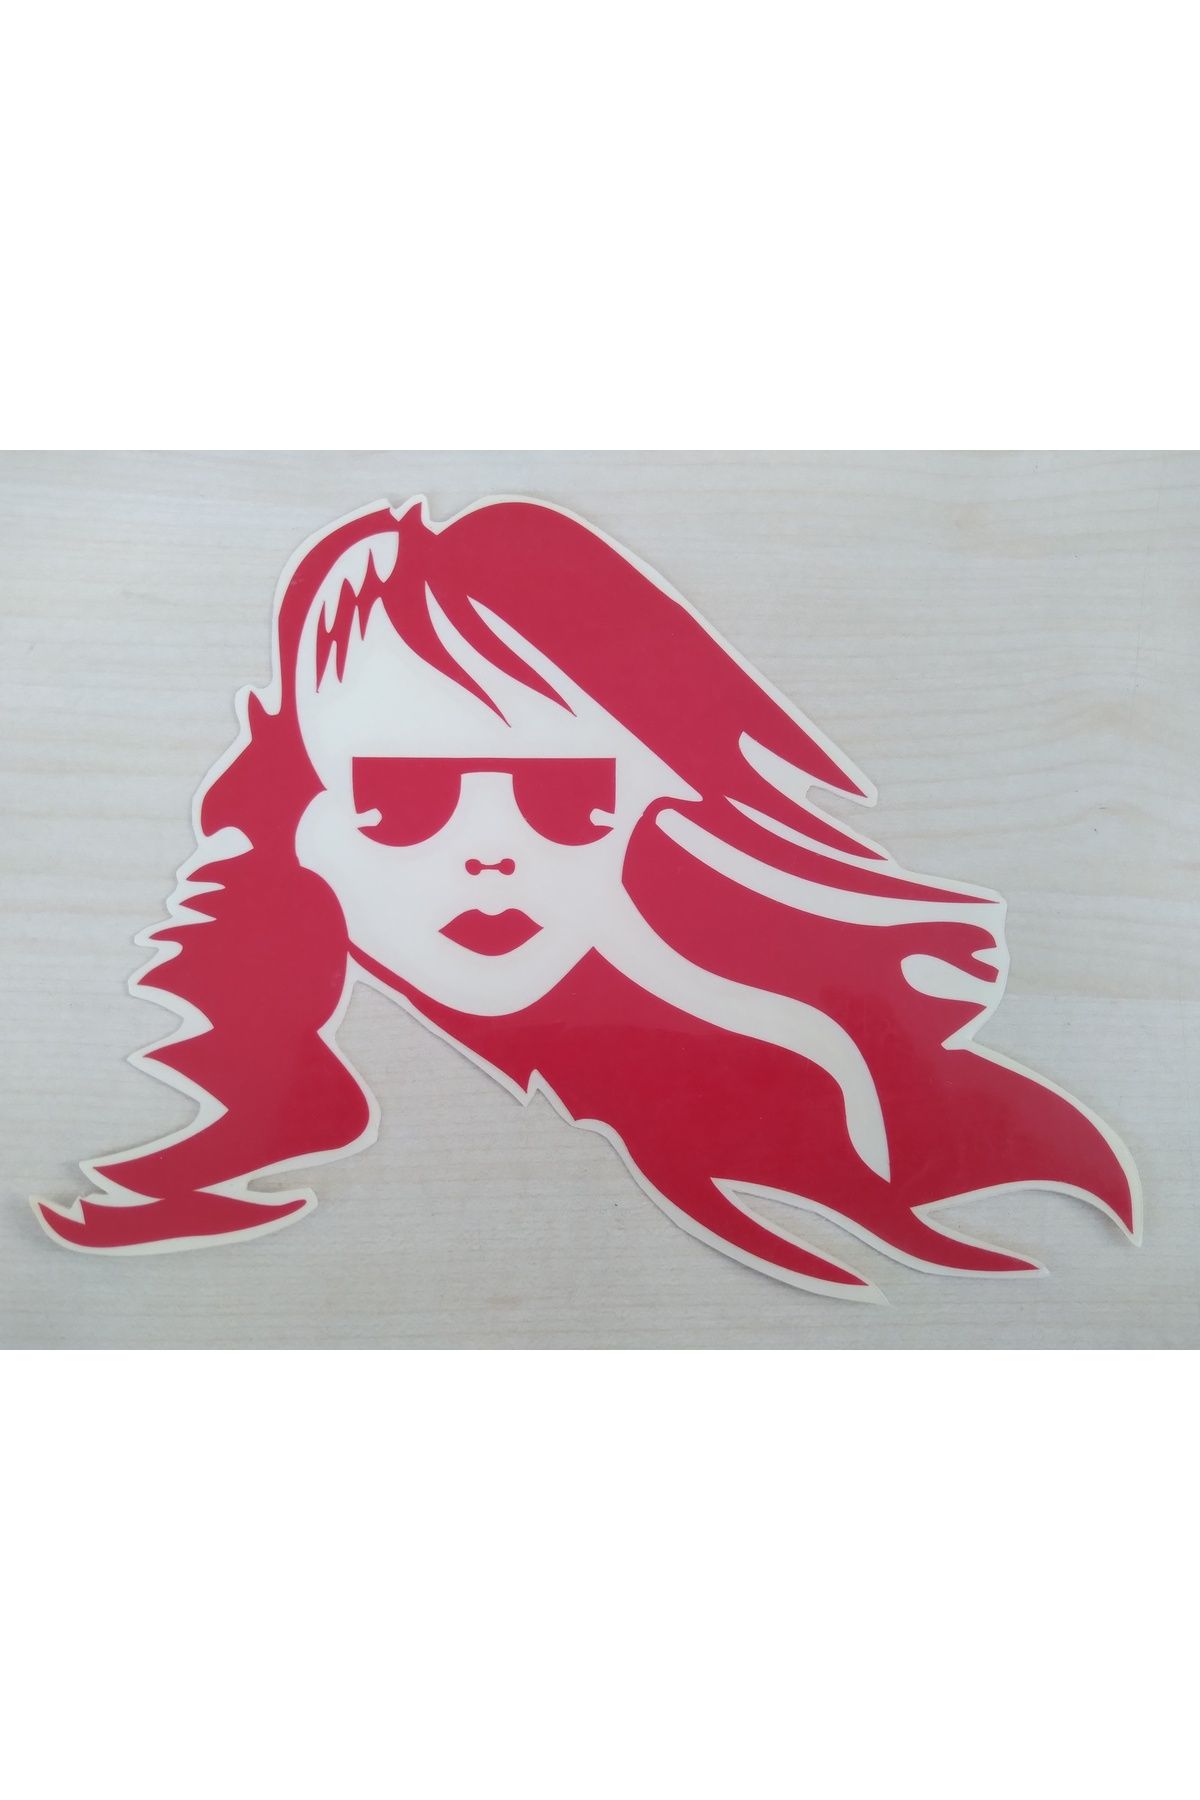 Yerli Uzun Saçlı Kız Sticker (kırmızı) 18x13cm Gözlüklü Kız Etiketi - Uzun Saçlı Kız Çıkartması